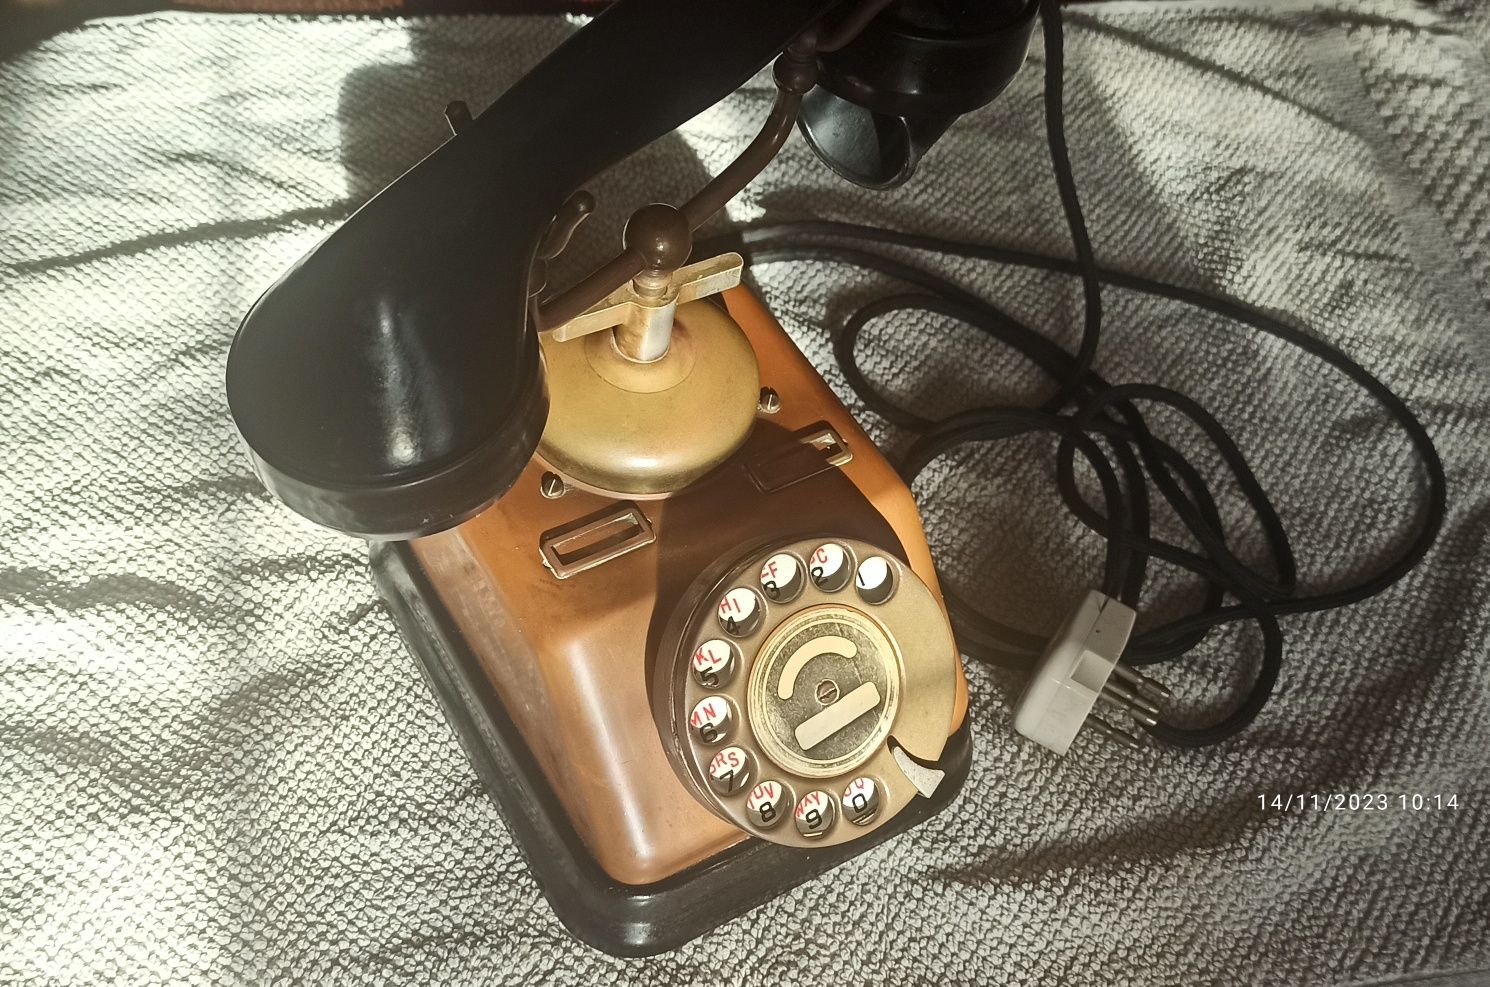 Telefon fix vechi de peste 80 ani